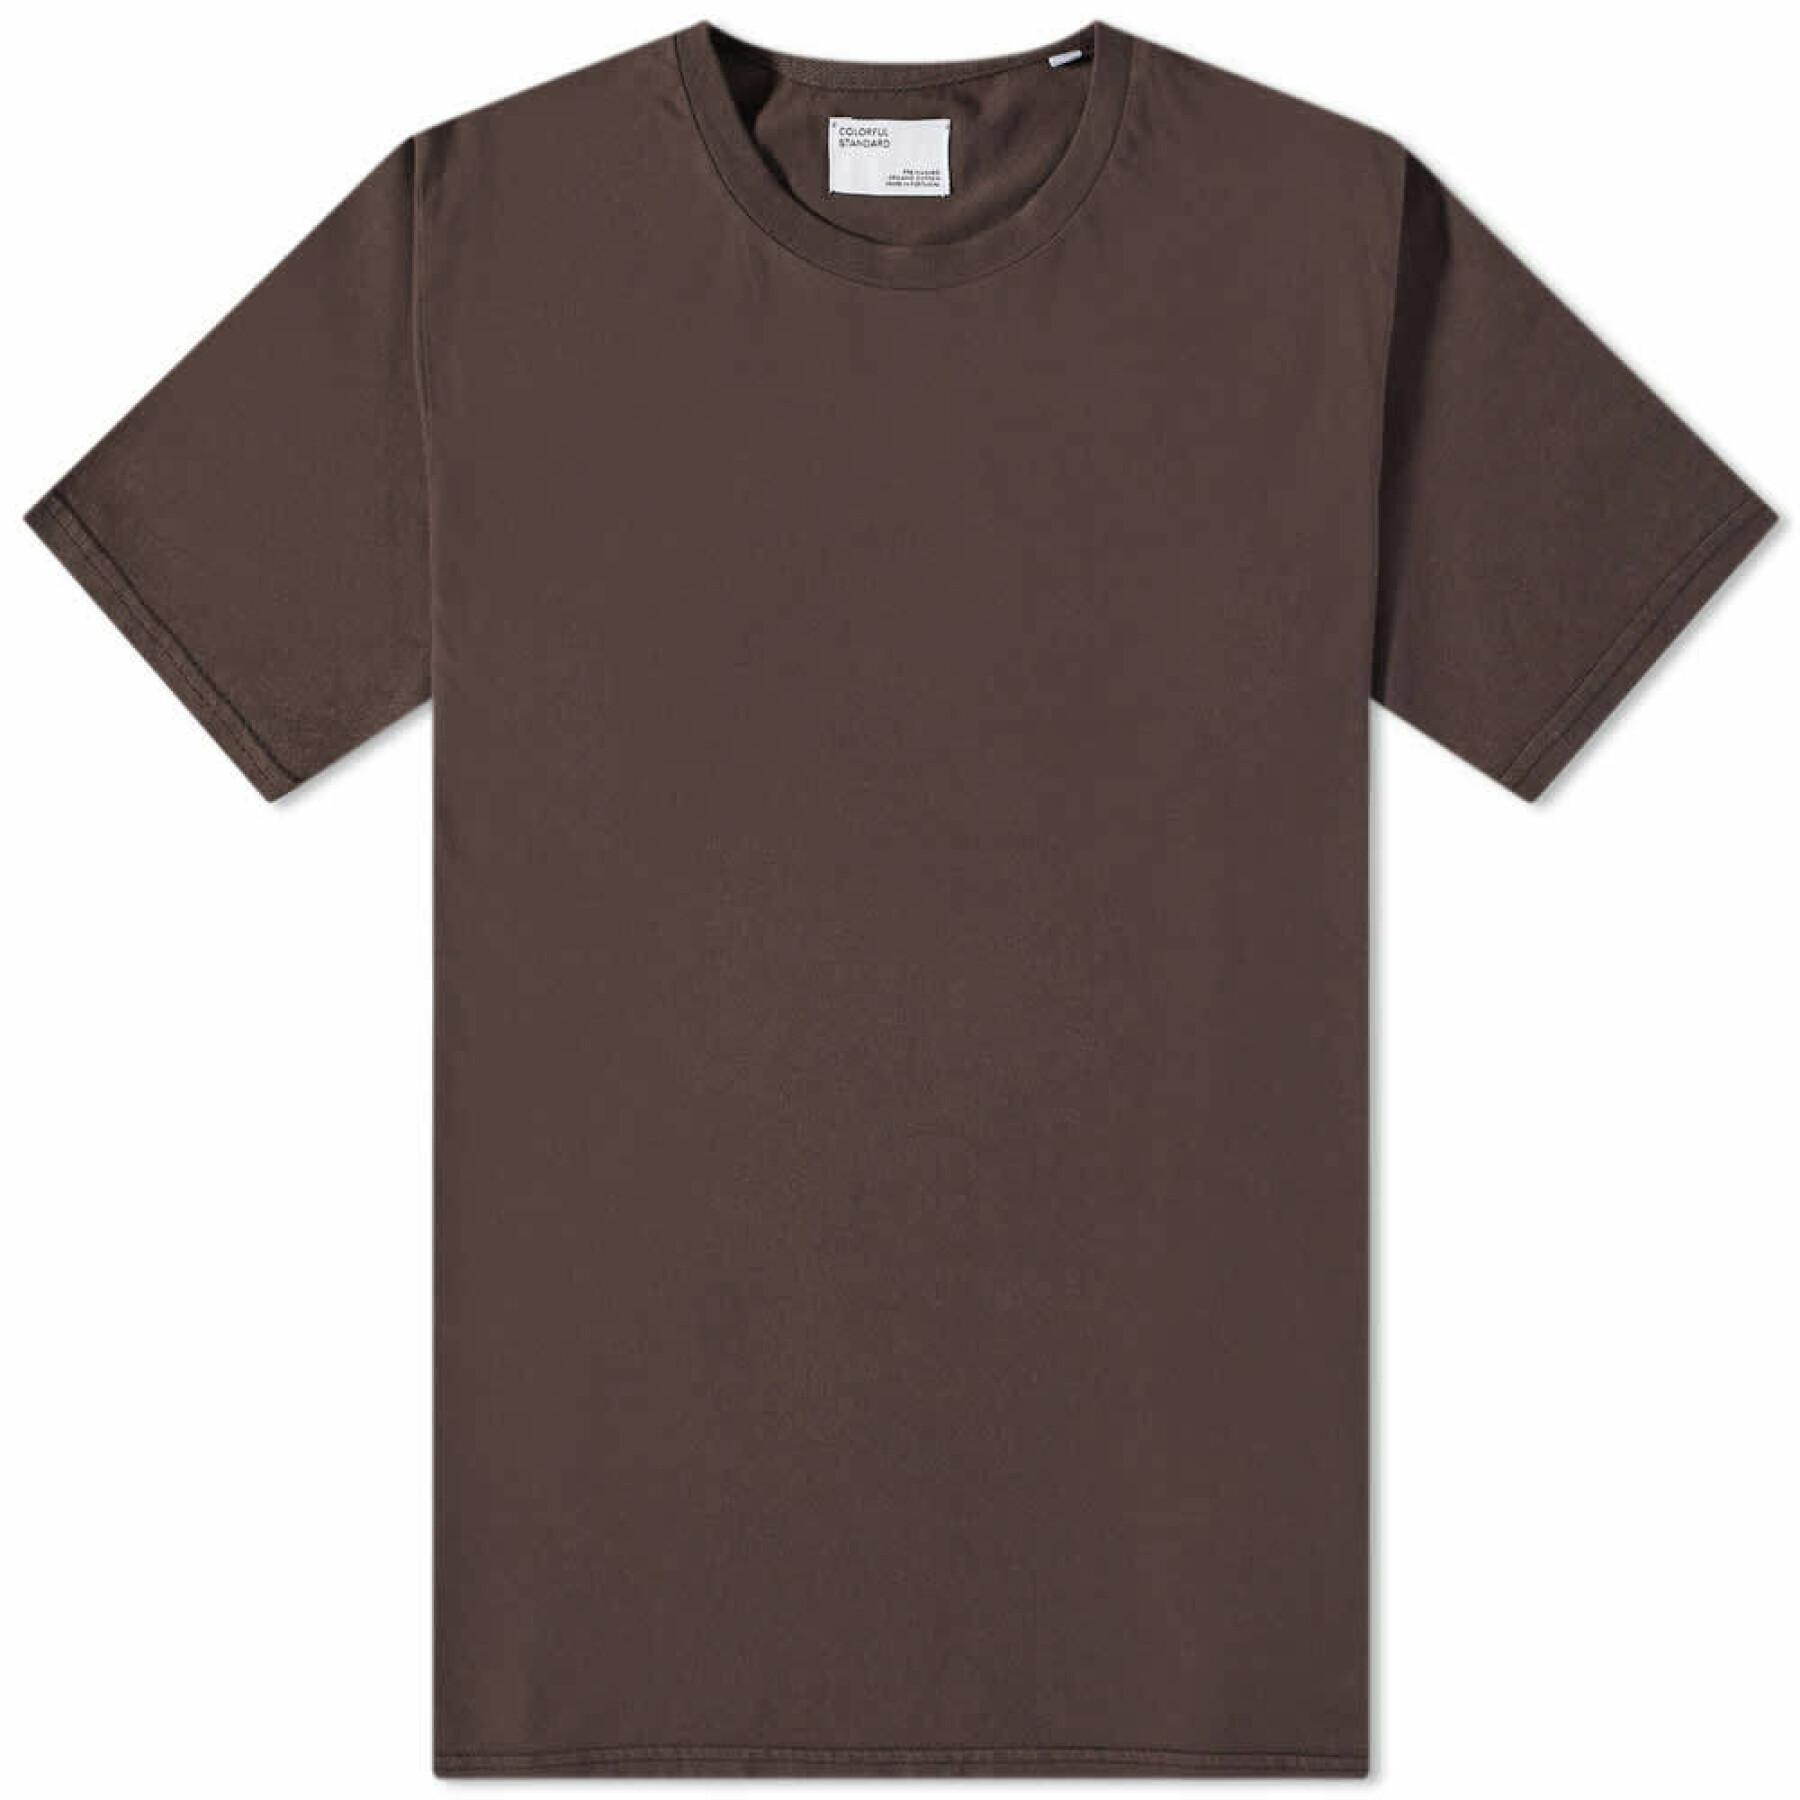 Maglietta Colorful Standard Cinnamon Brown